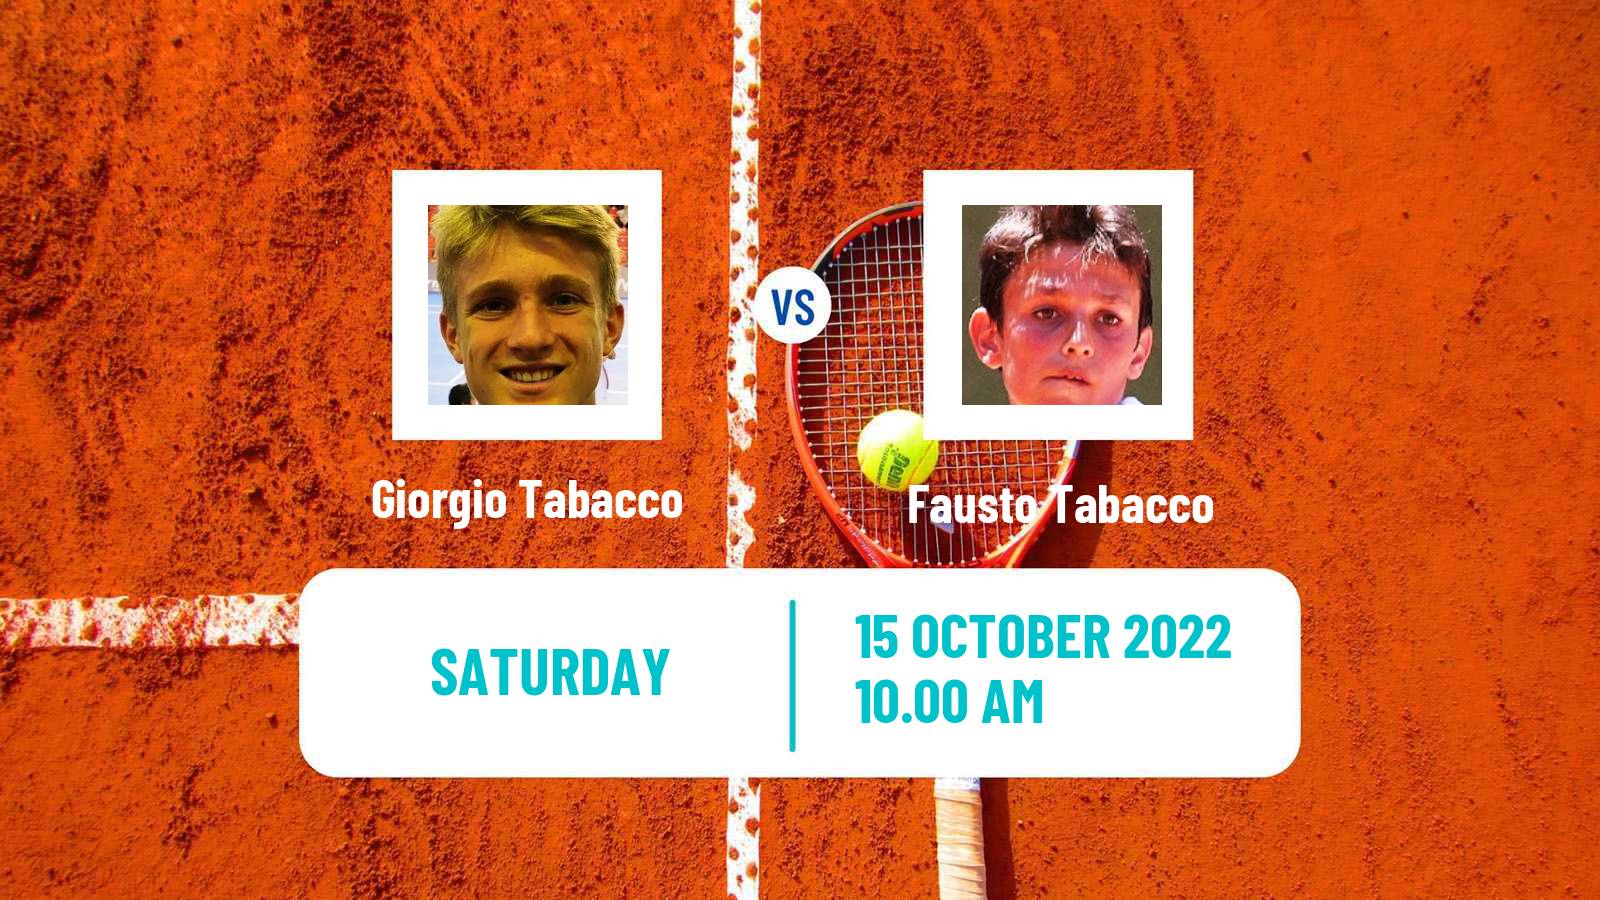 Tennis ITF Tournaments Giorgio Tabacco - Fausto Tabacco